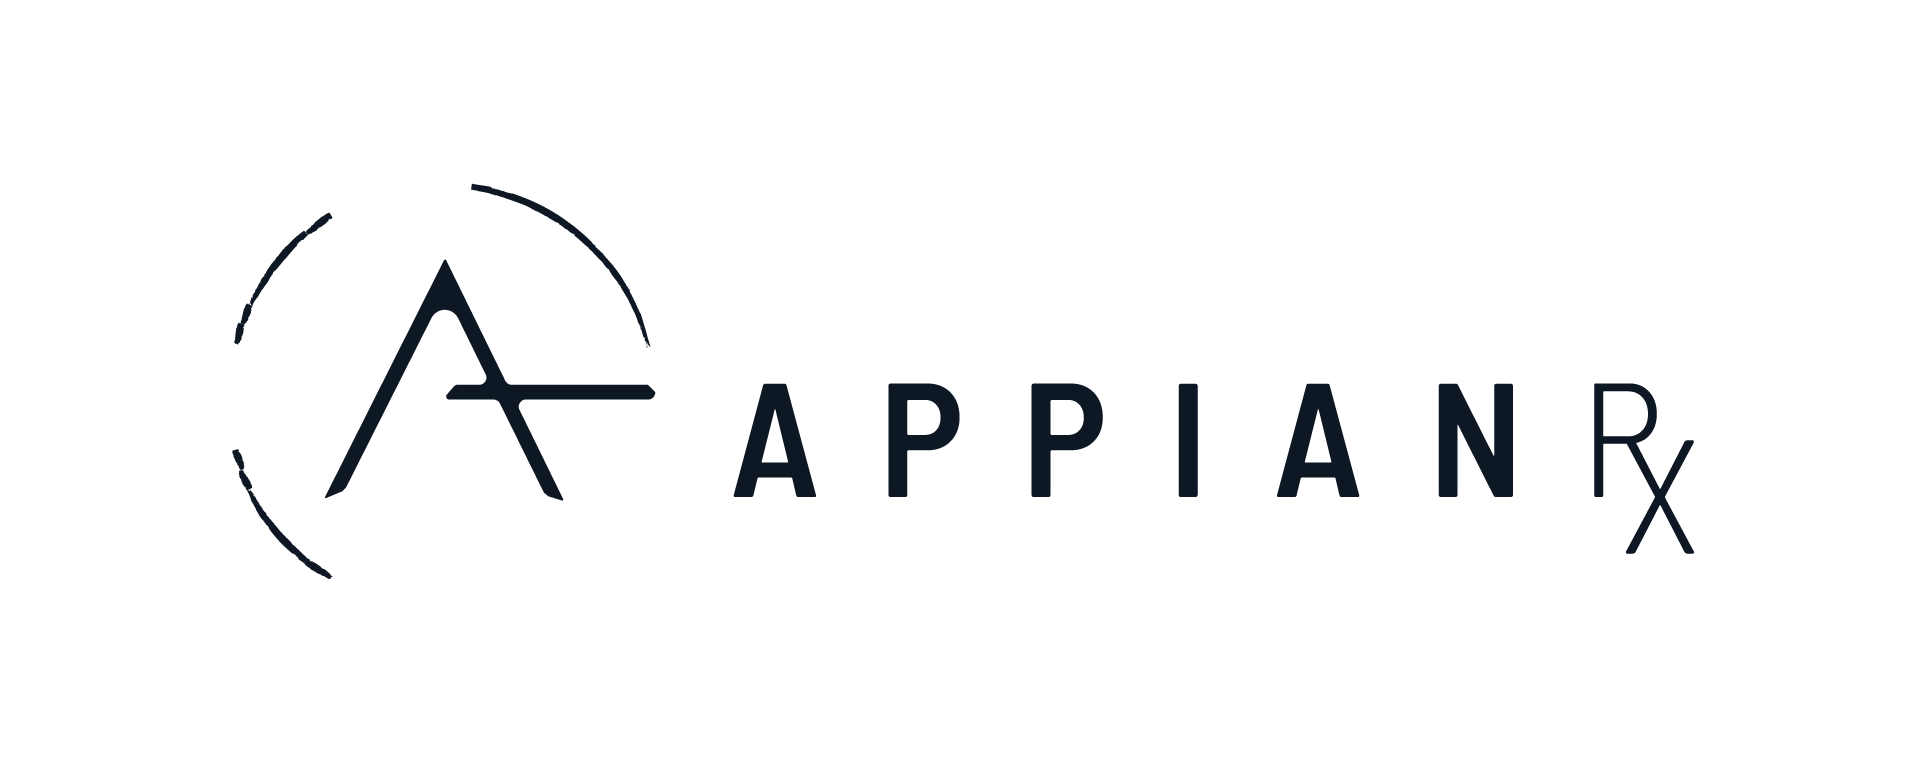 Appian Logo - AppianRx: The Patient Journey Begins Here